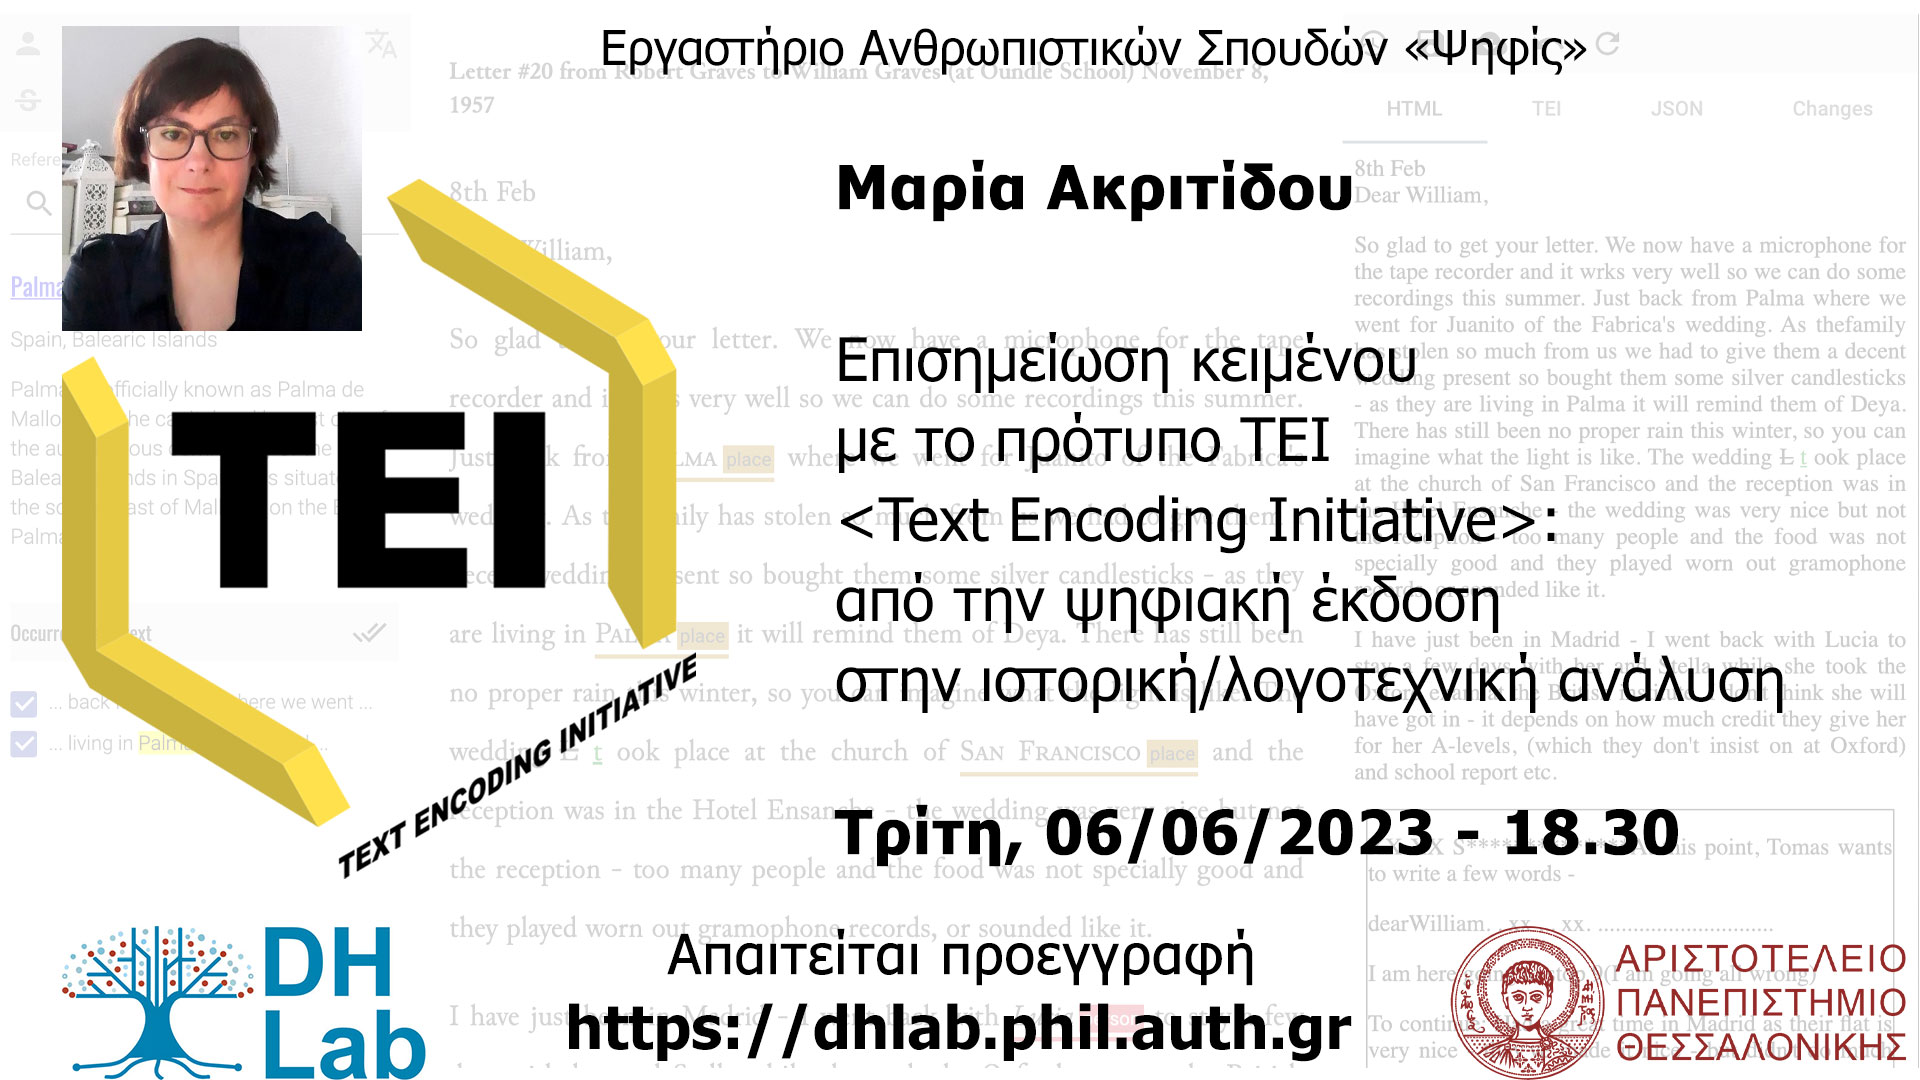 Επισημείωση κειμένου με το πρότυπο TEI (Text Encoding Initiative): από την ψηφιακή έκδοση στην ιστορική/λογοτεχνική ανάλυση